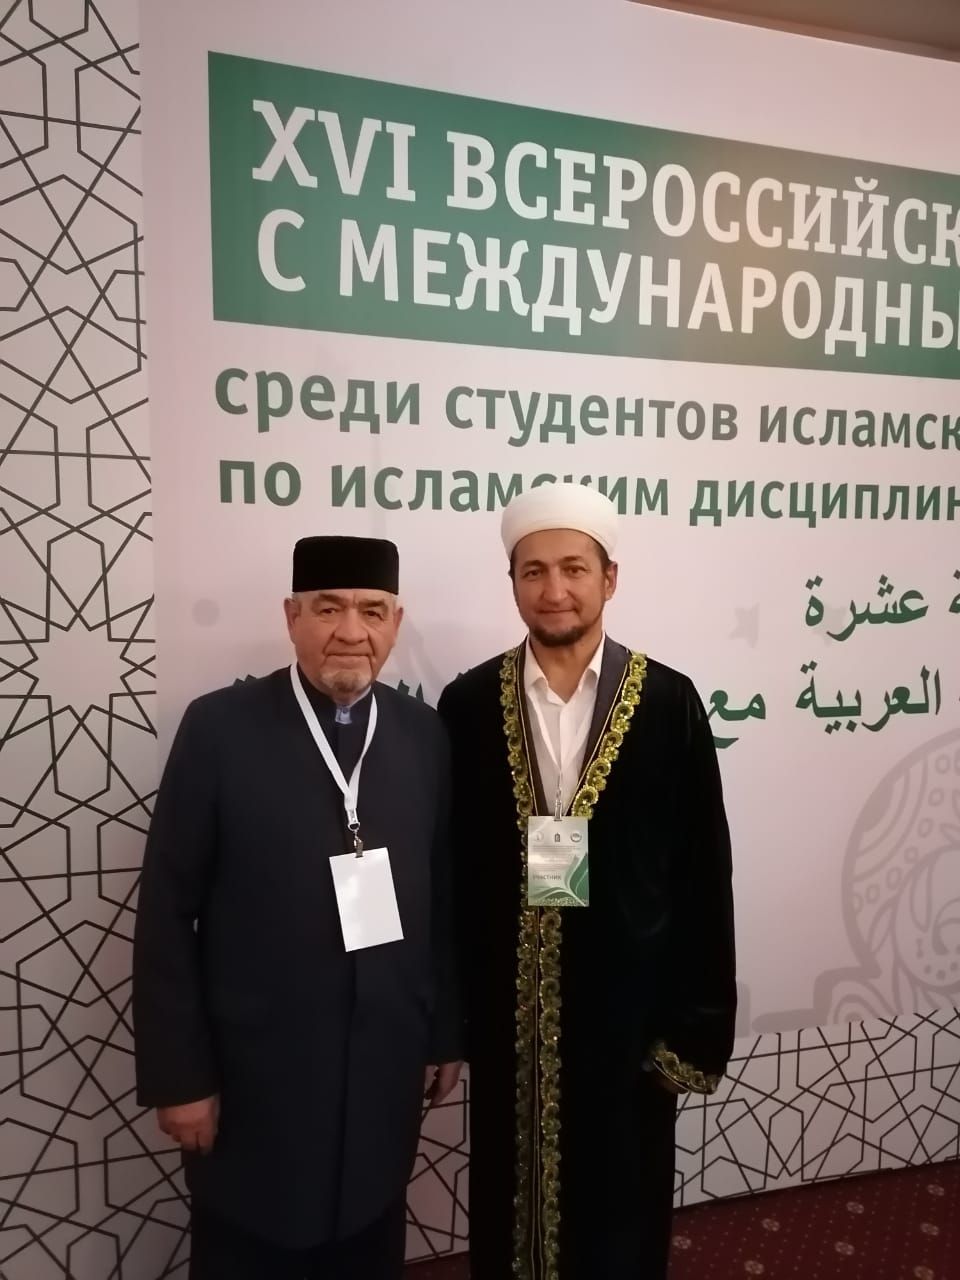 Дрожжановцы принимают участие в международном симпозиуме «Традиции и инновации в мусульманском образовании России»